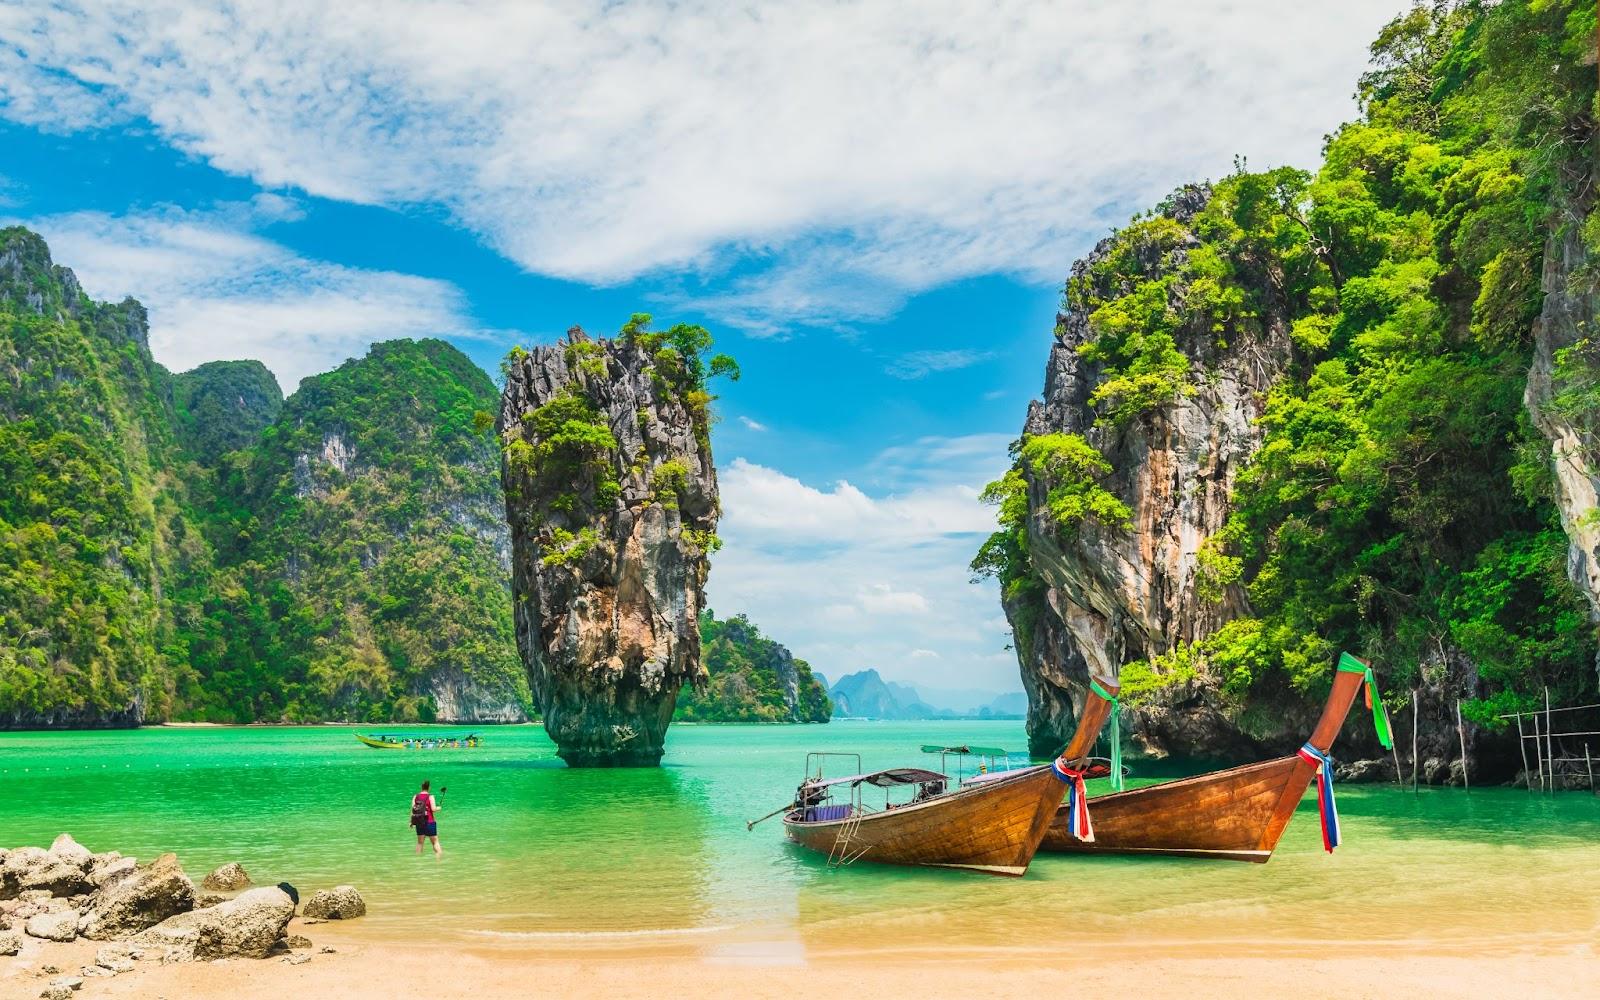 James bond island with boat for traveler Phang-Nga bay, Thailand